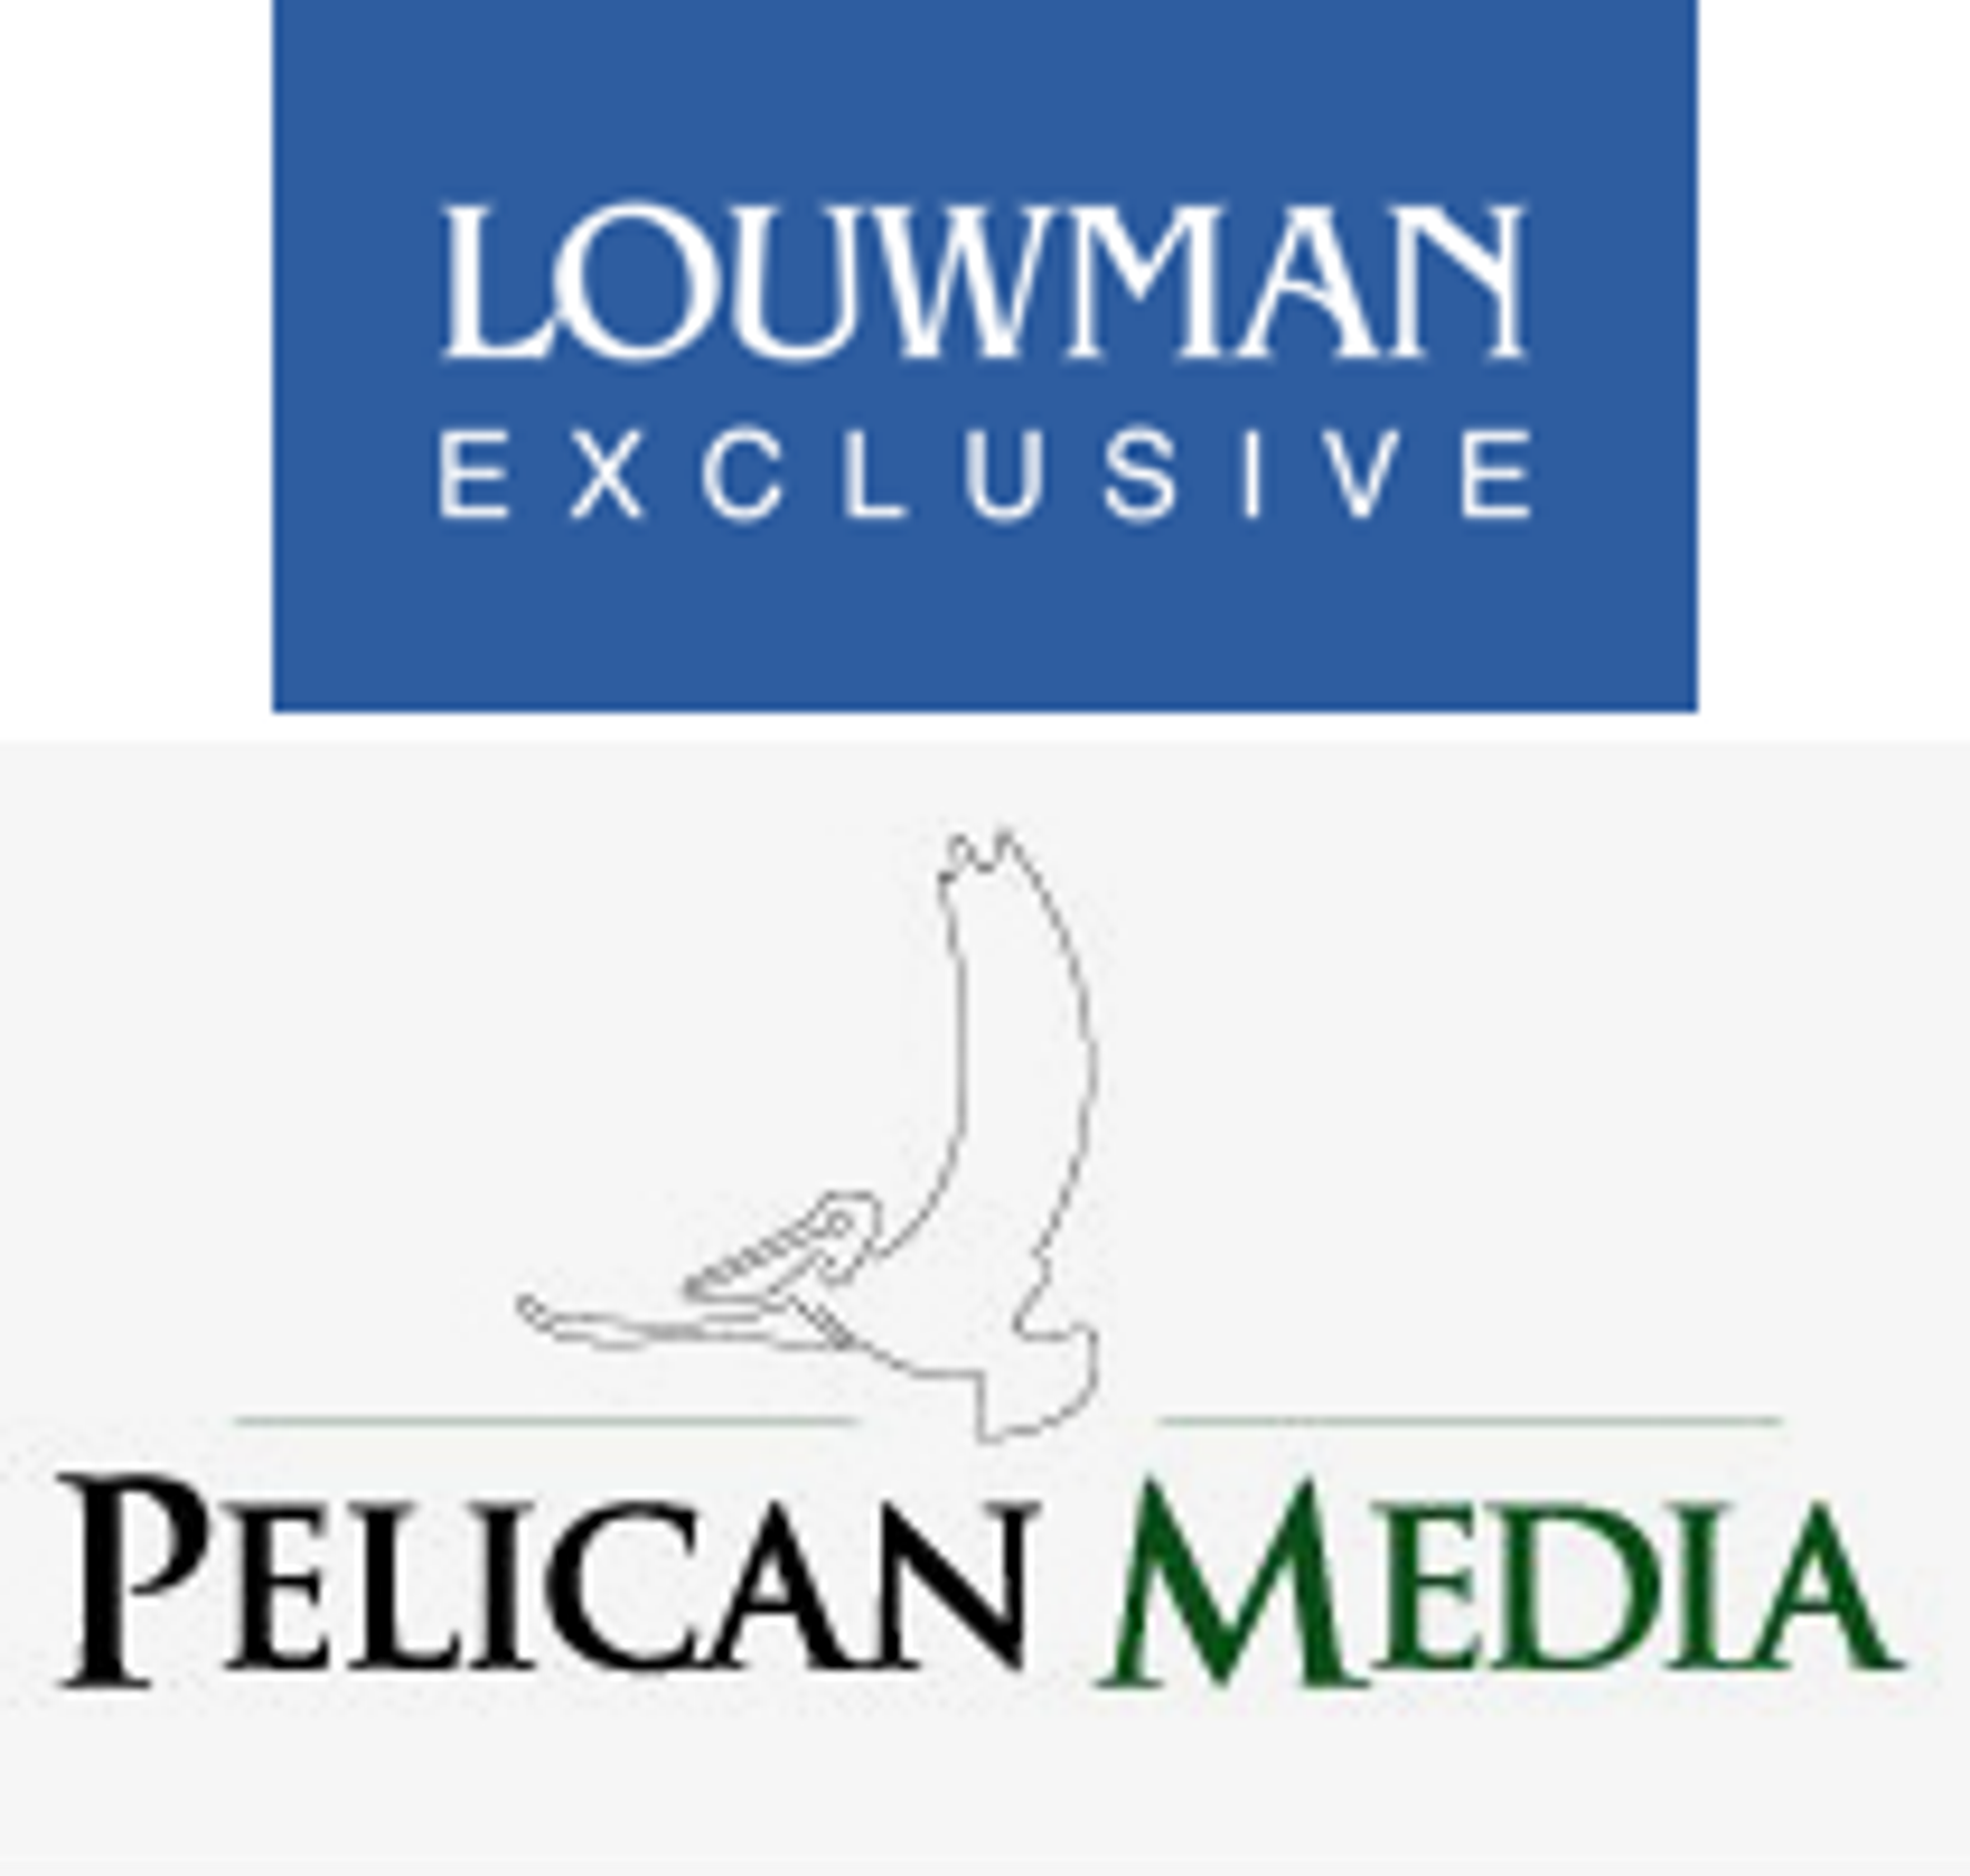 Pelican Media lanceert luxe automagazine Louwman Exclusive